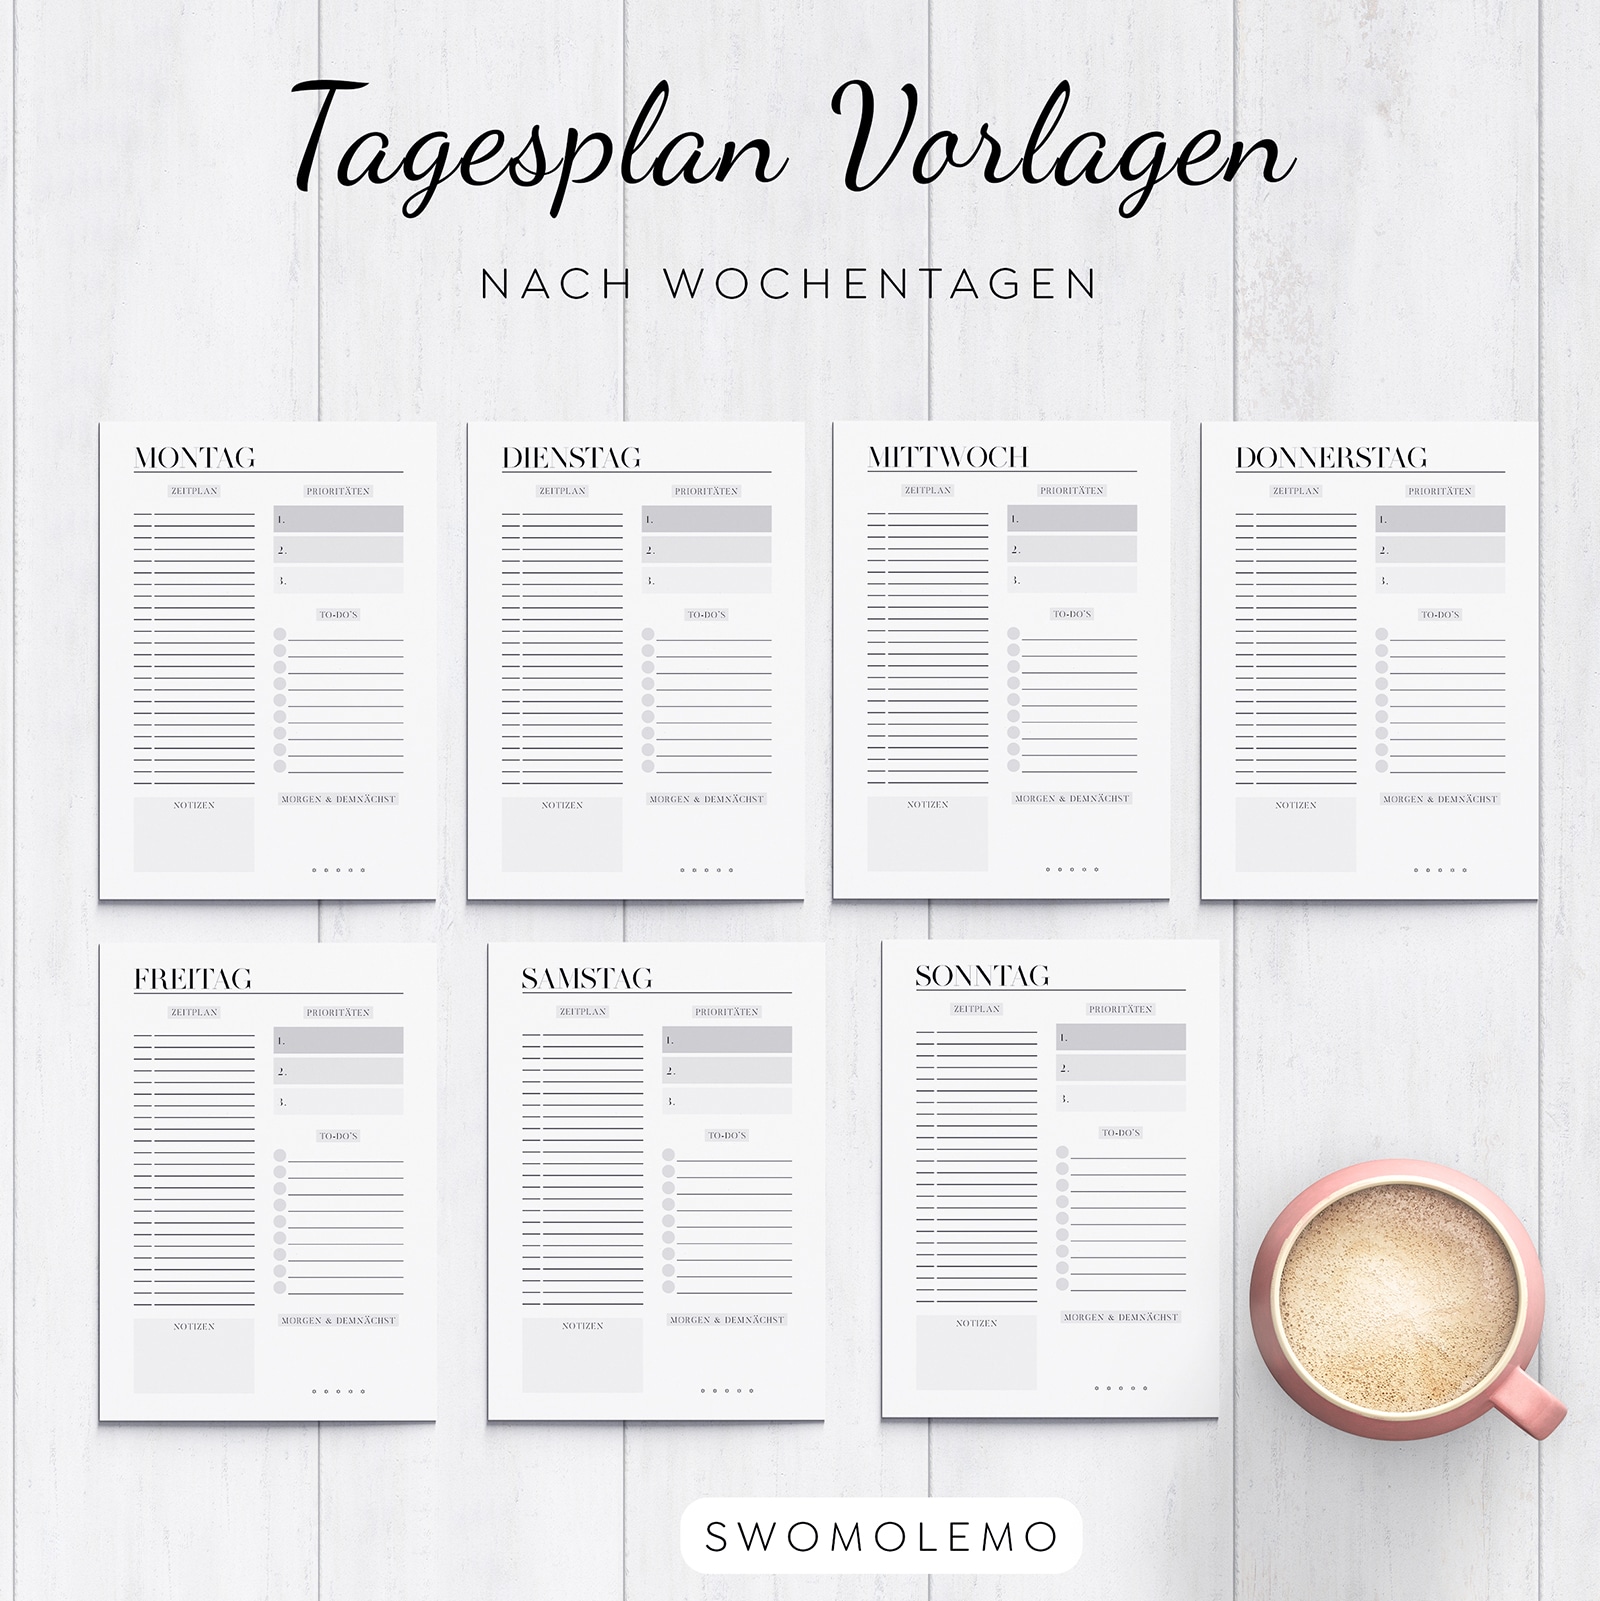 Tagesplan_Vorlagen_nach_Wochentagen_für_jeden_Tag_download